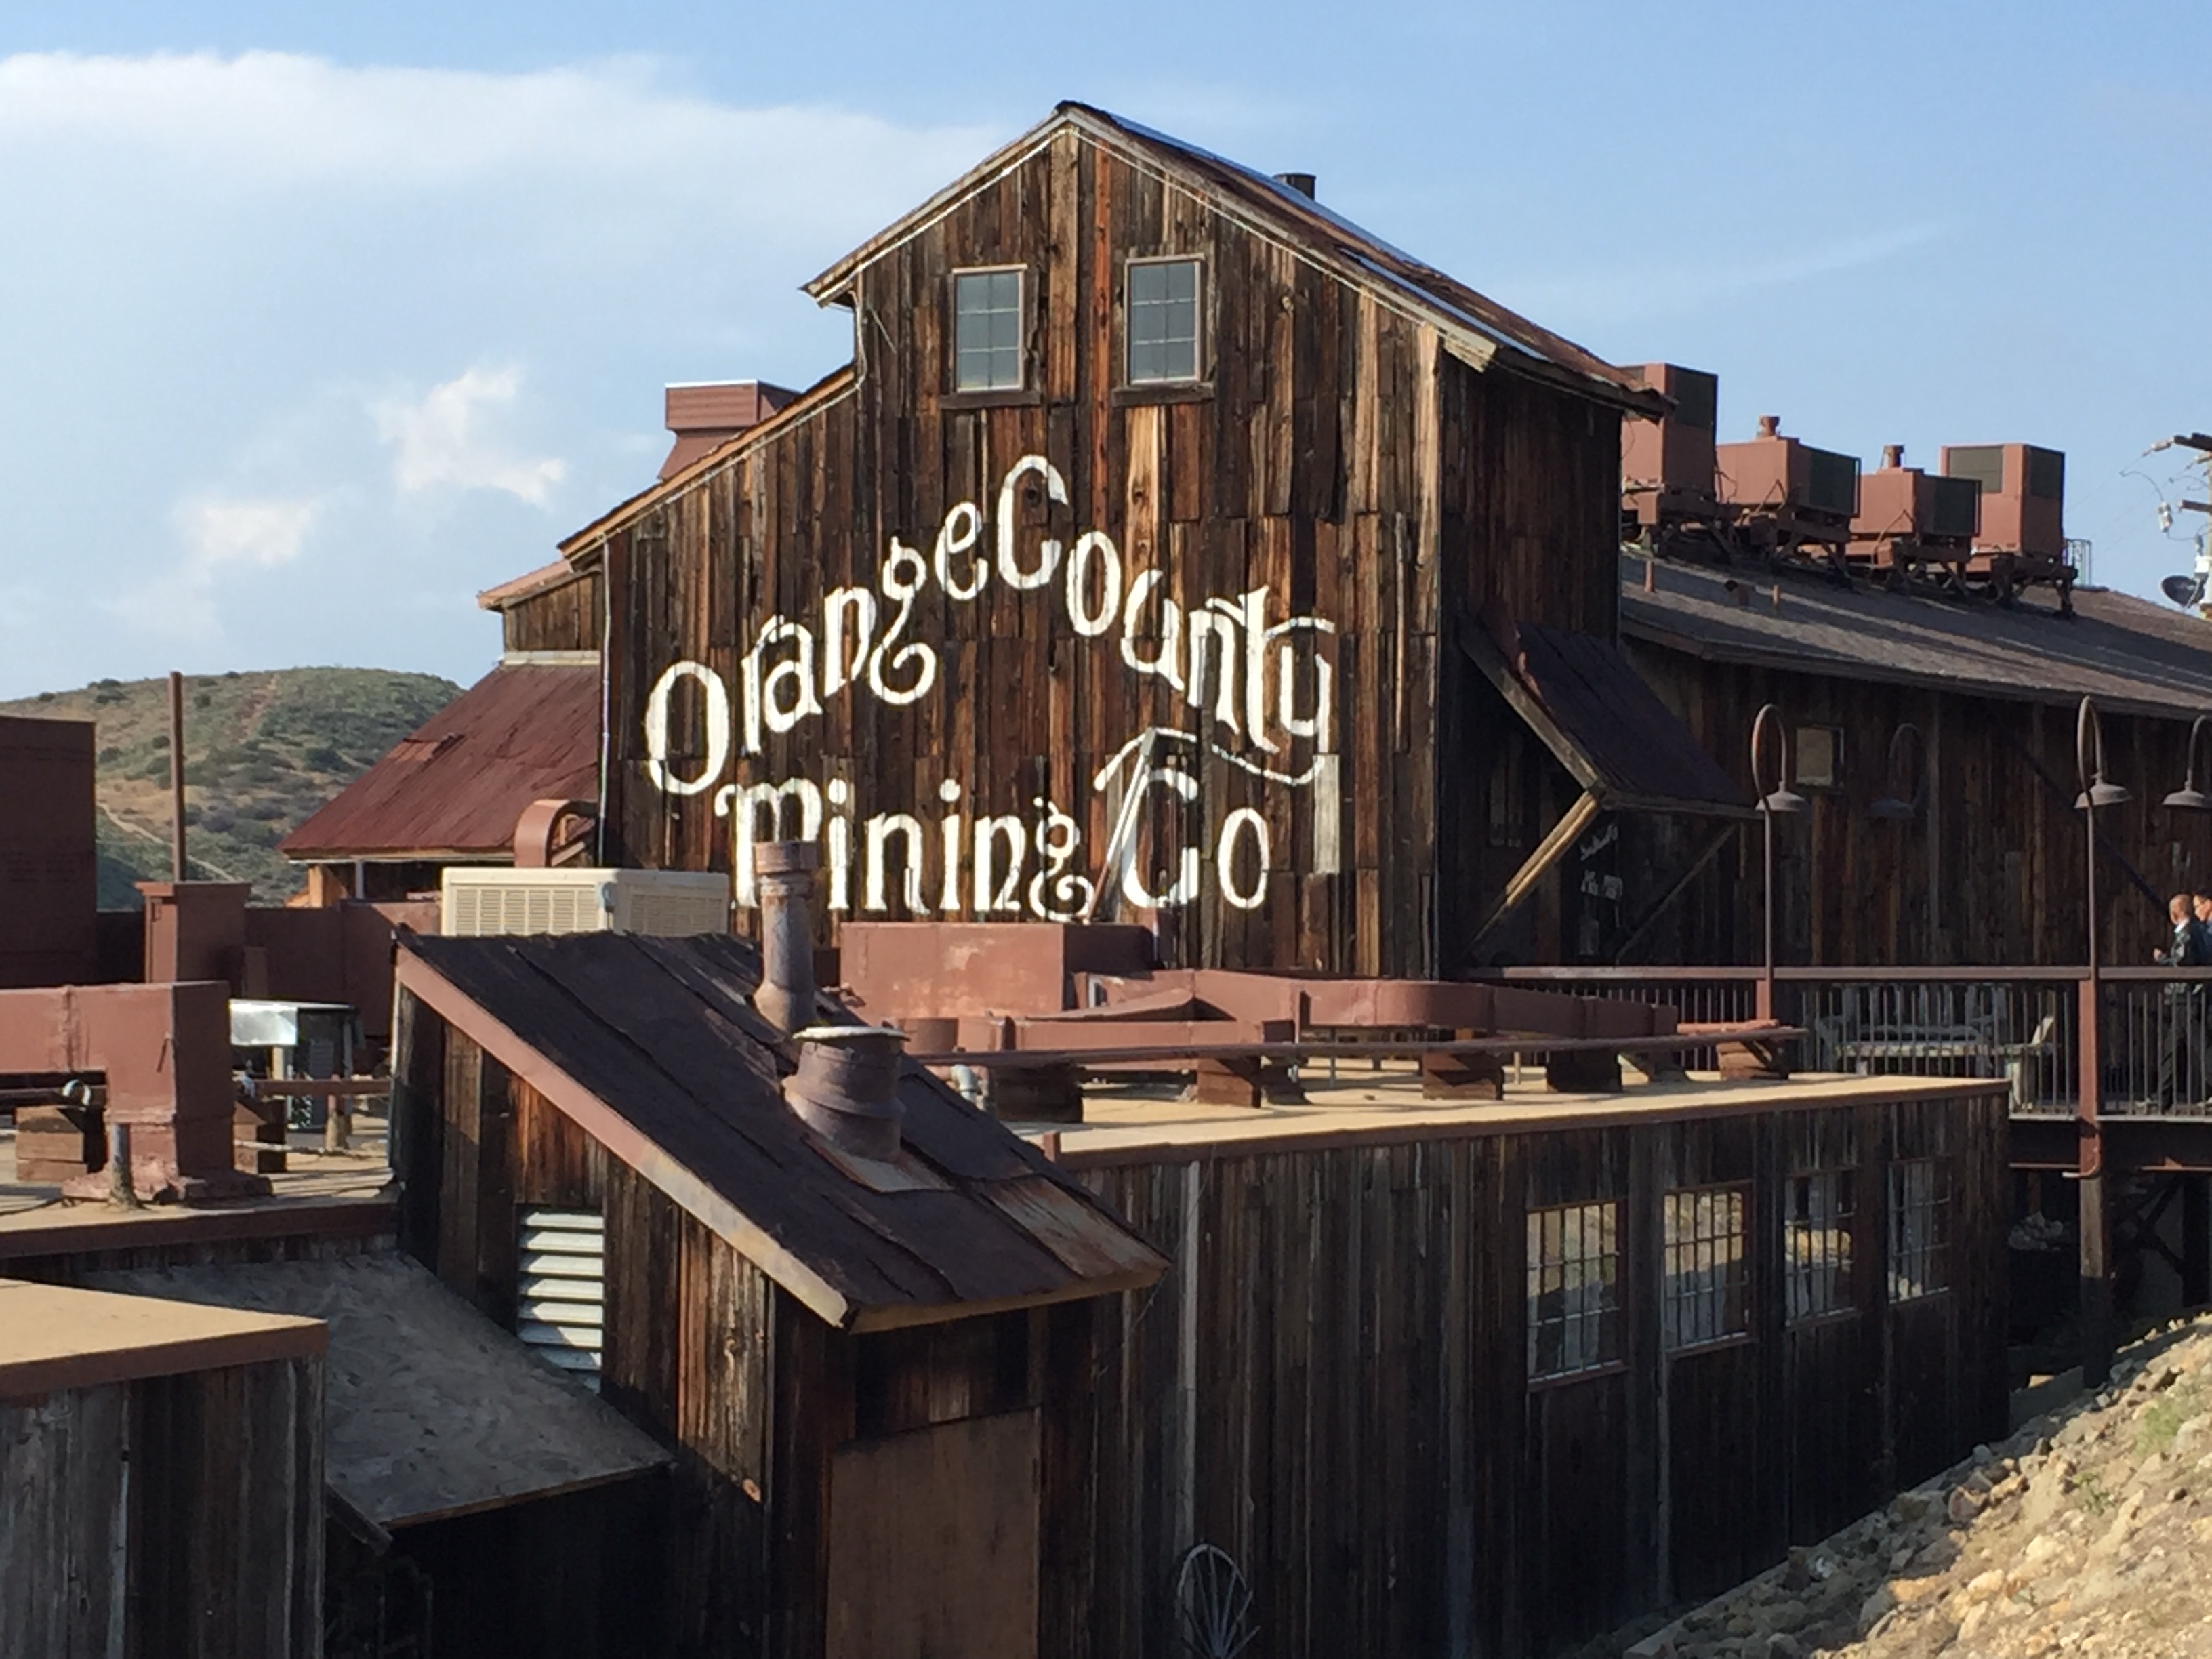 Orange County Mining Company